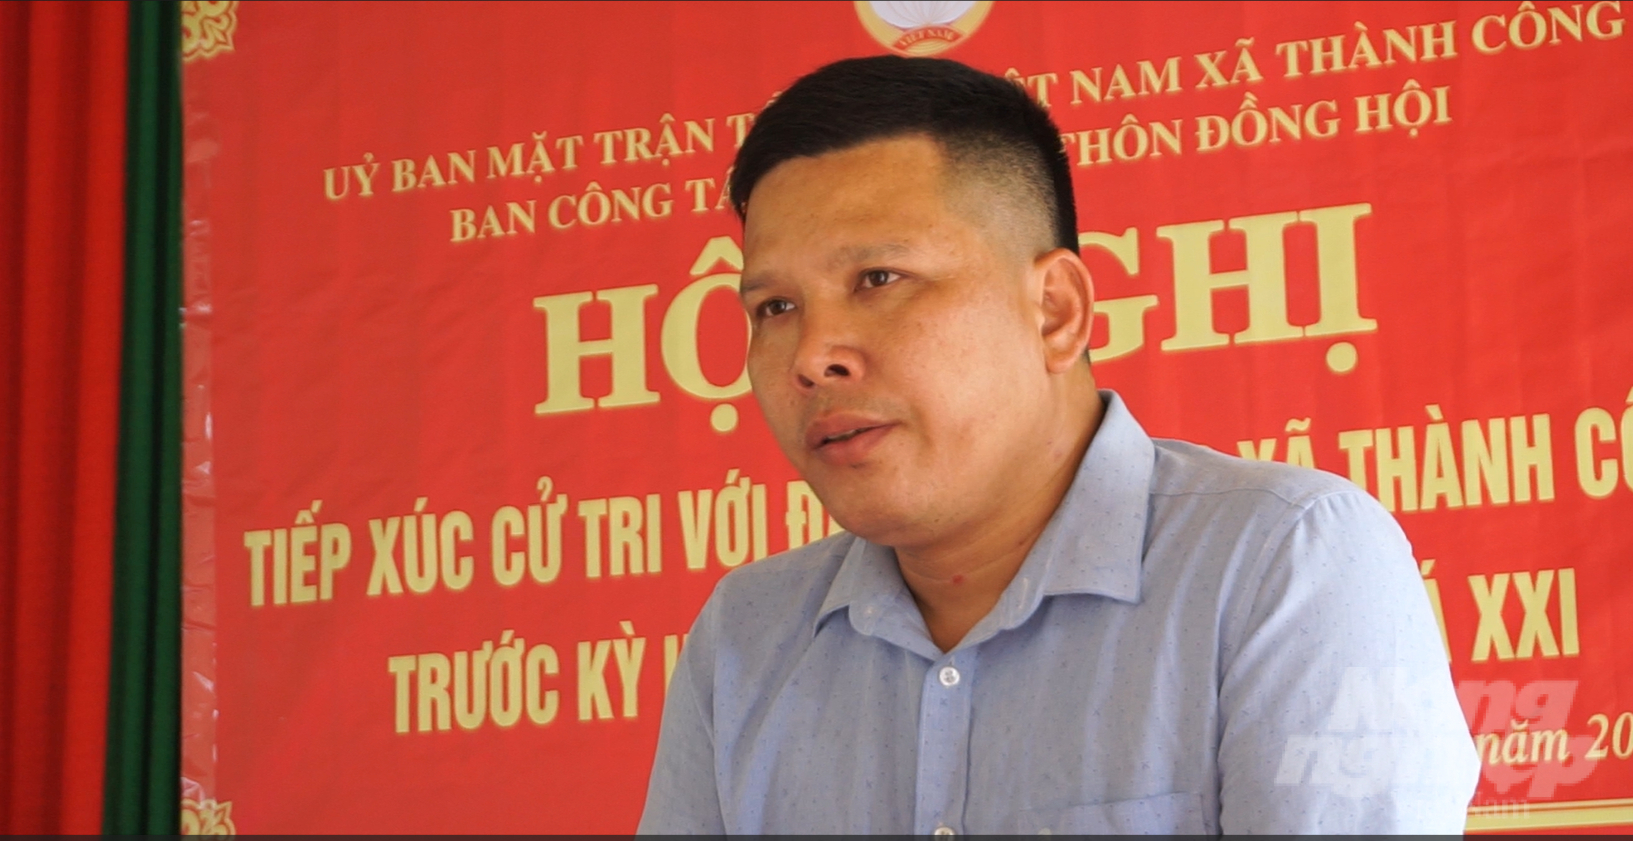 Ông Nguyễn Anh Xuân, đại diện Công ty VIHAD trả lời người dân tại cuộc đối thoại. Ảnh: Quốc Toản.